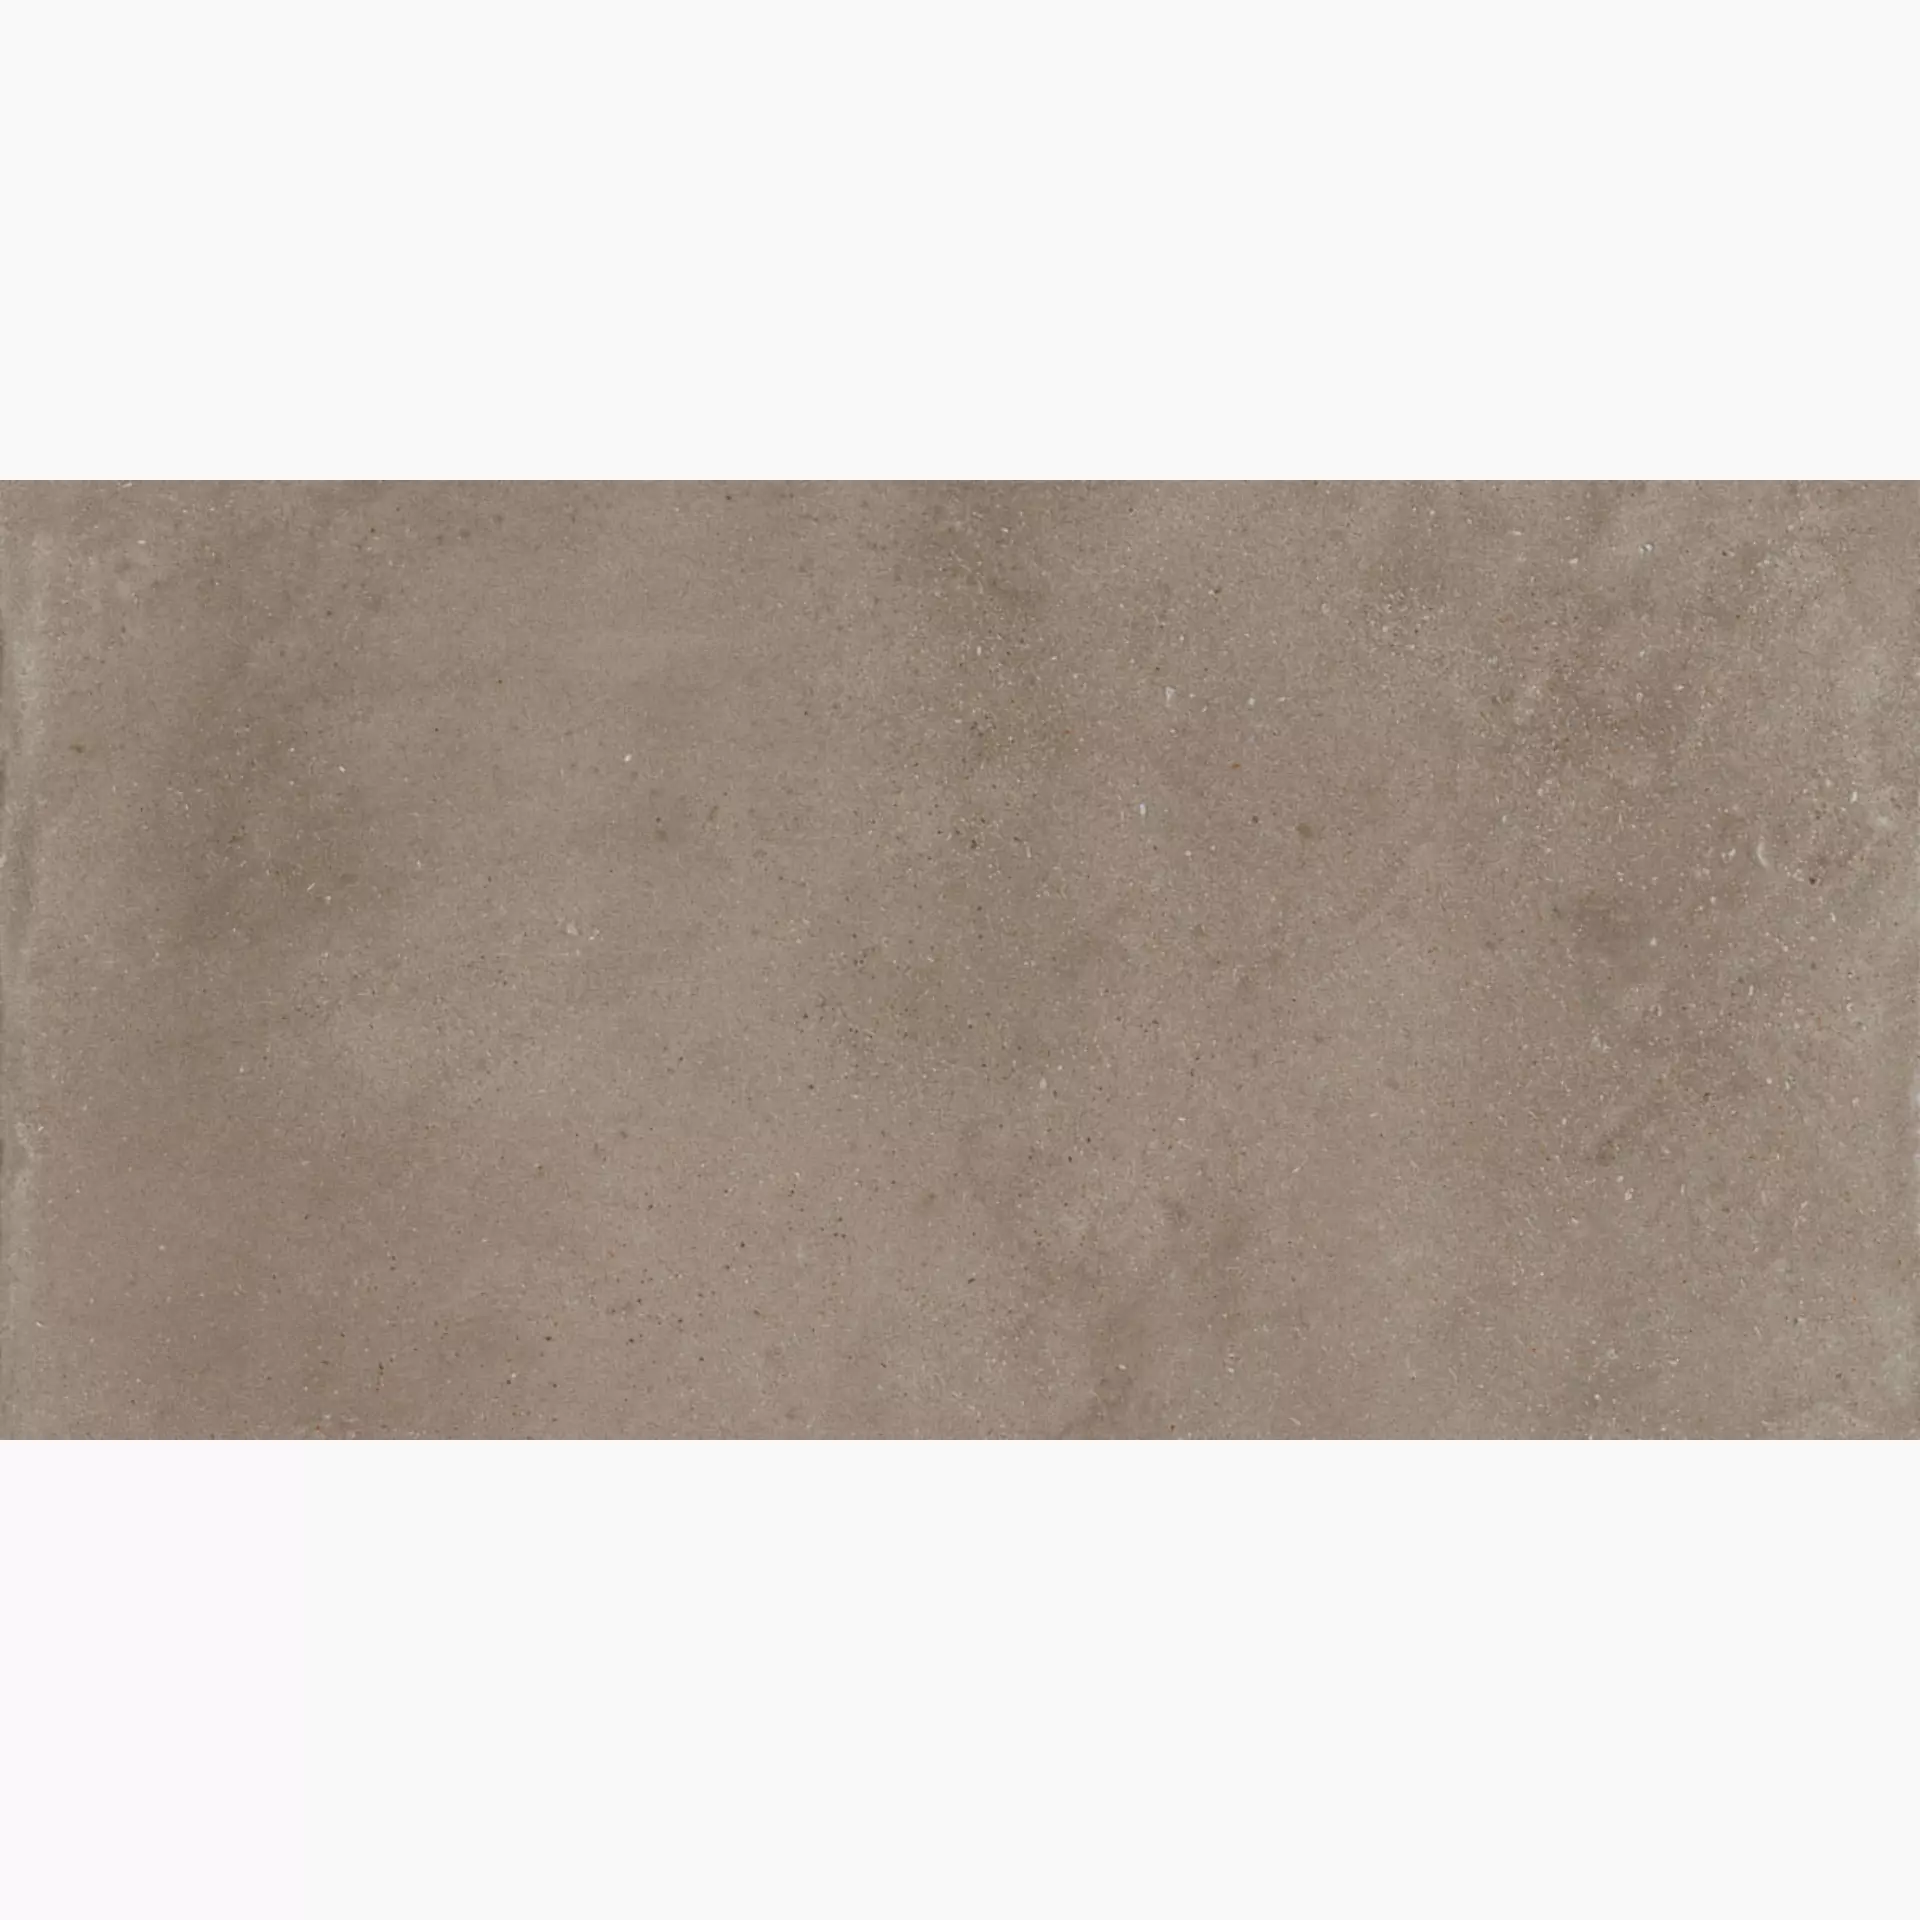 Imola Blox Dark beige Natural Flat Matt fondi 30x60cm rectified 10mm - BLOX 36BS RM